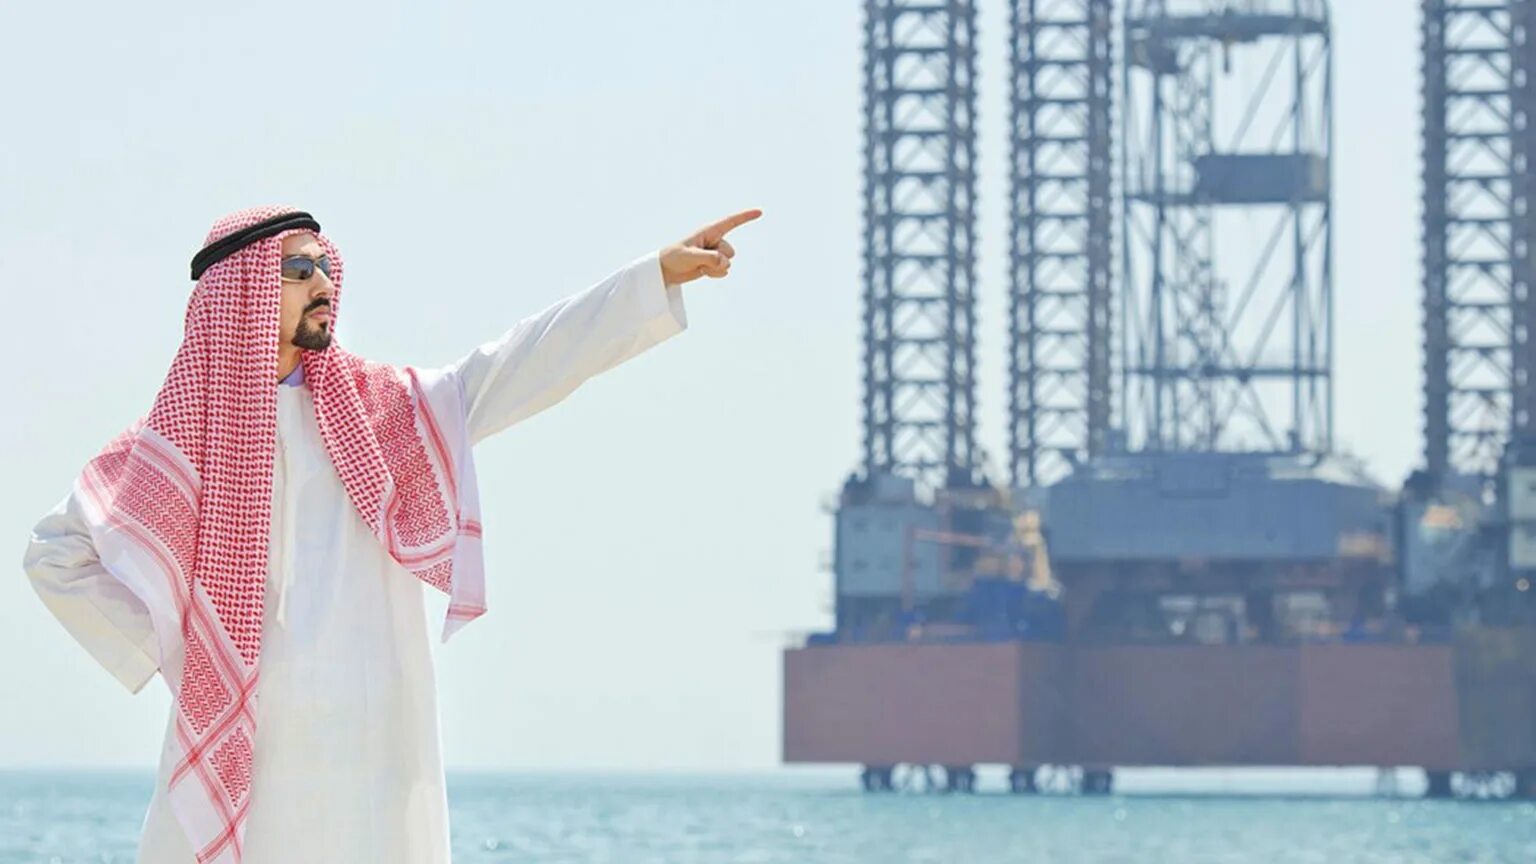 Нефть арабов